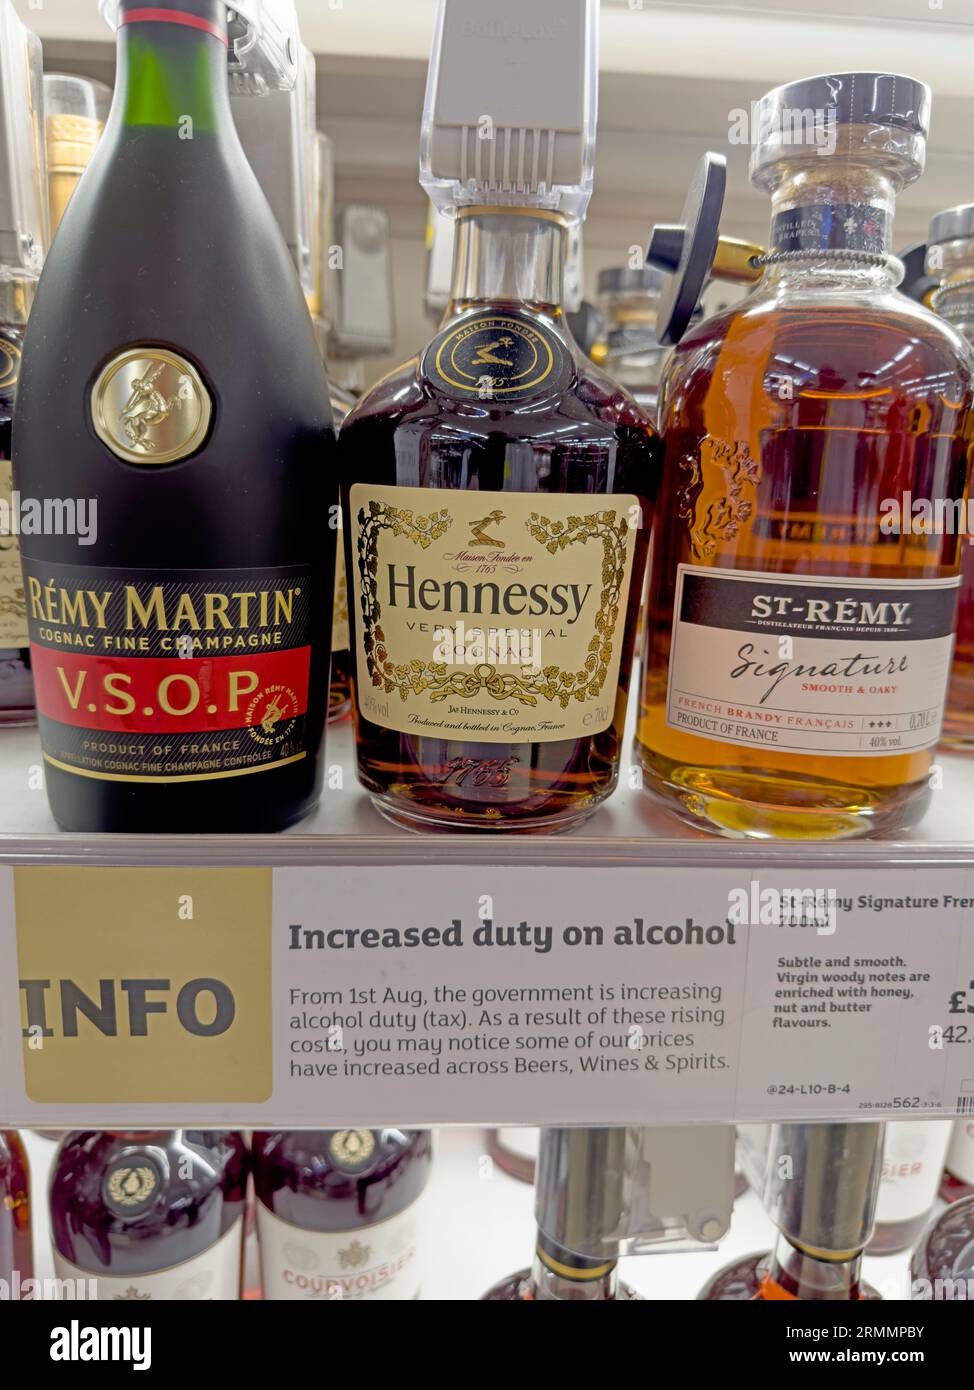 Augmentation record des droits sur l’alcool sous le gouvernement conservateur, le 1 août 2023, dans le magasin Sainsburys sur le brandy, le cognac et autres spiritueux et vins après le Brexit Banque D'Images